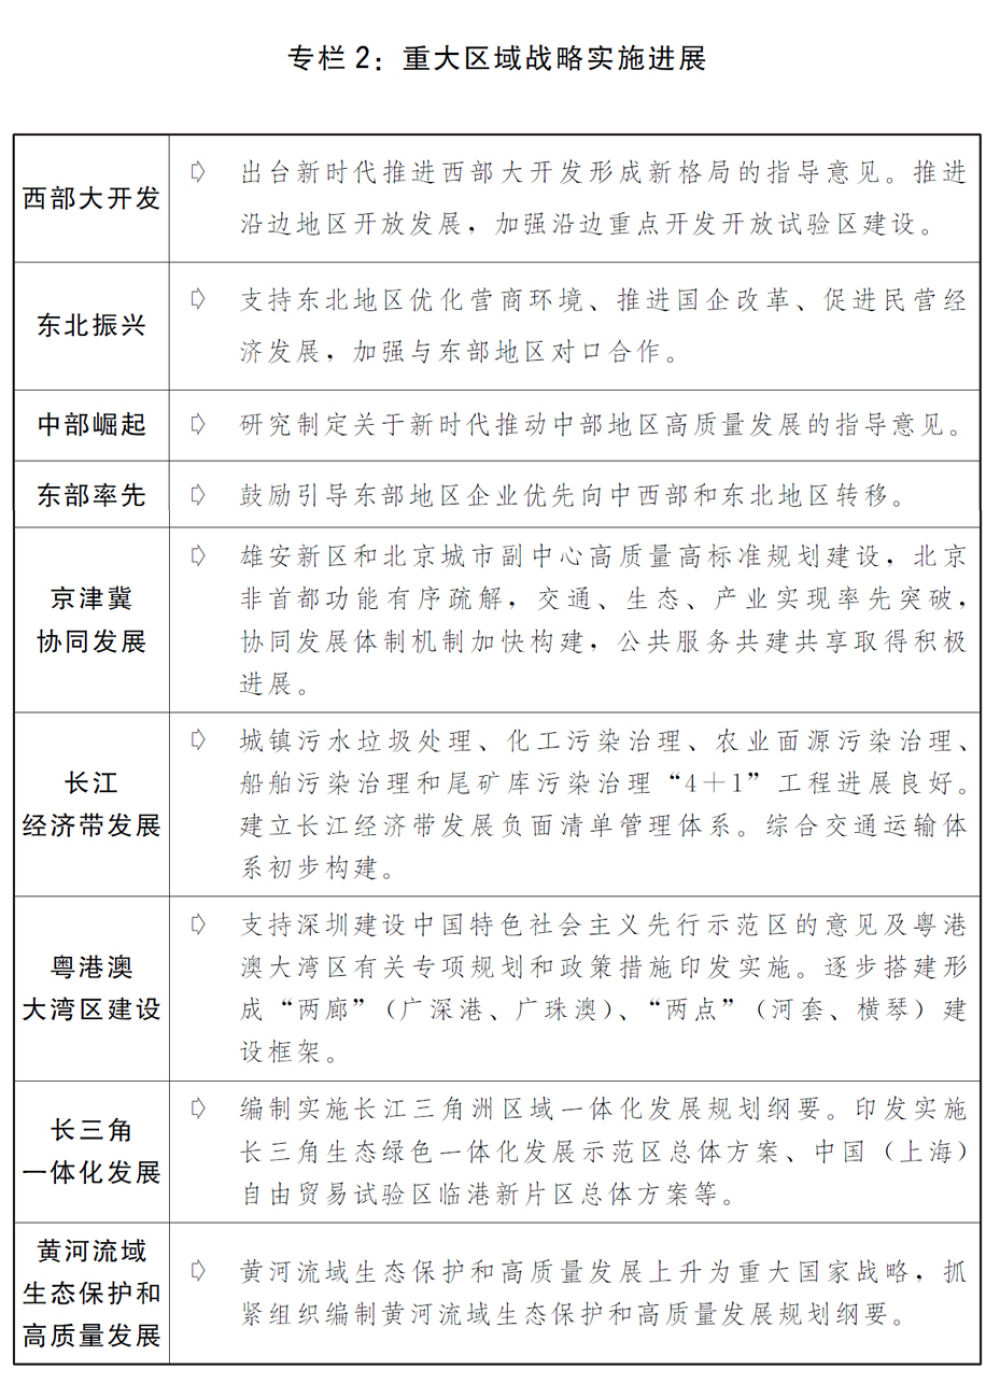 国民经济和社会发展计划草案报告全文发布-中国网地产